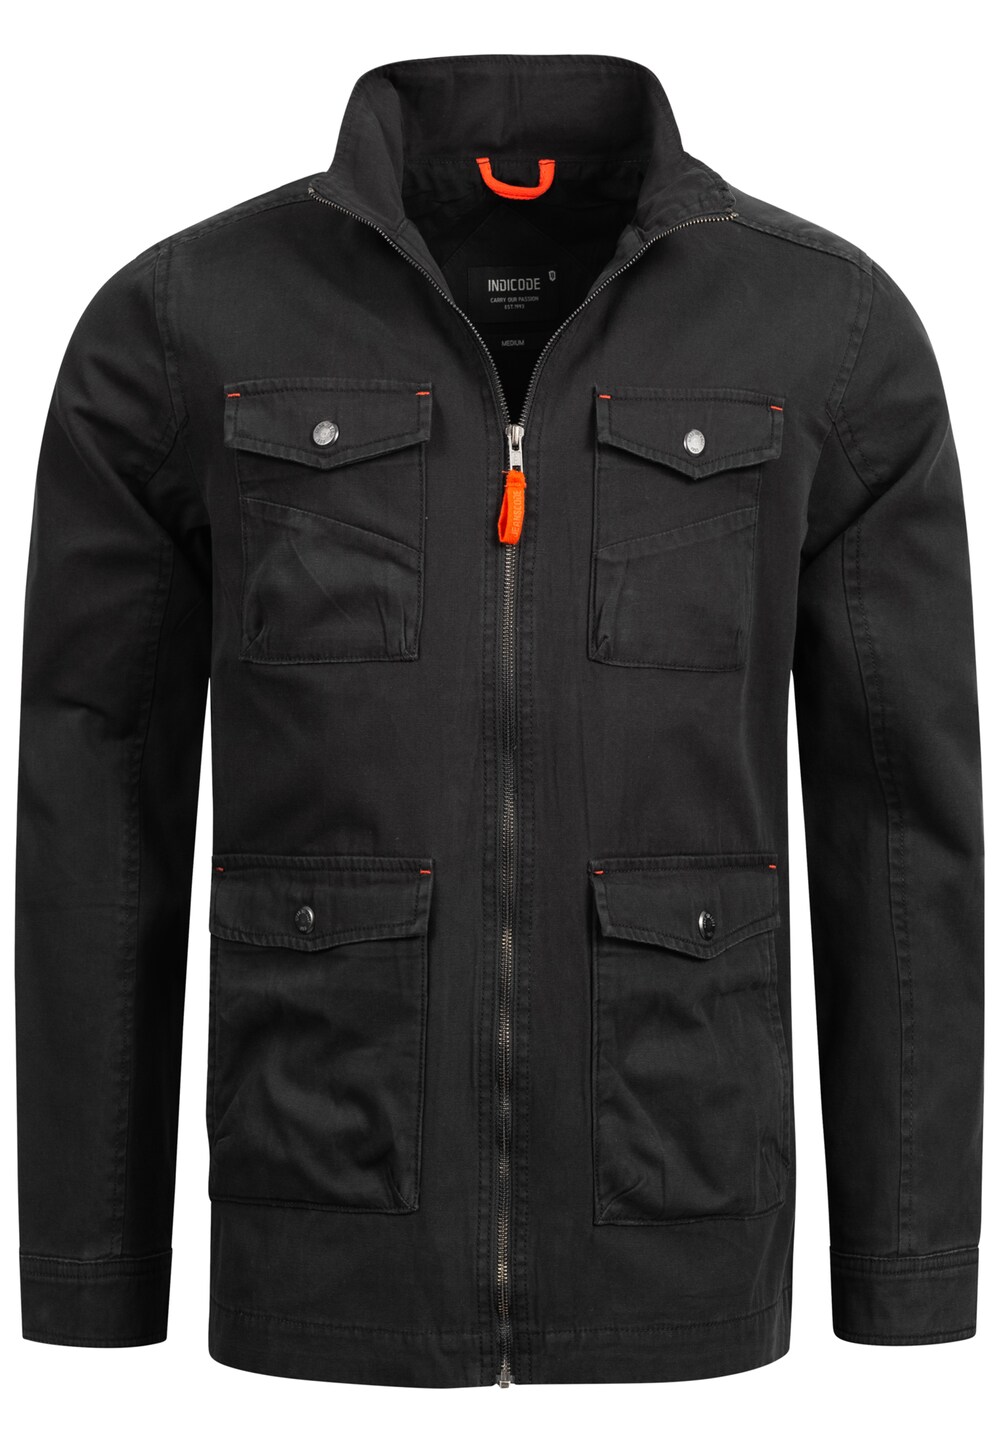 Межсезонная куртка INDICODE JEANS Simeon, черный межсезонная куртка indicode jeans aaron черный